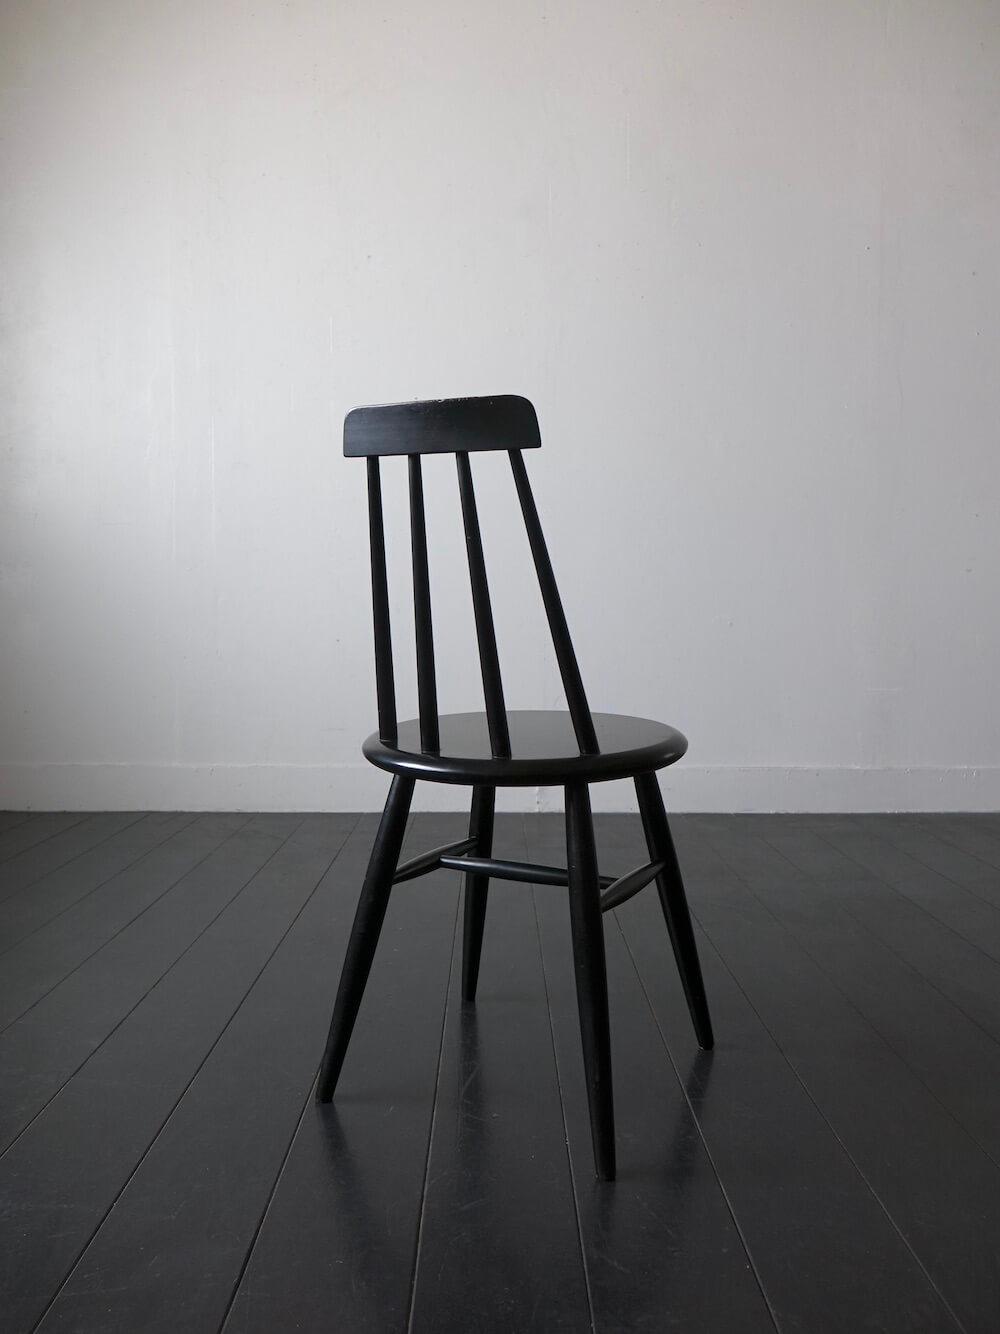 Black spoke chair by ASKO